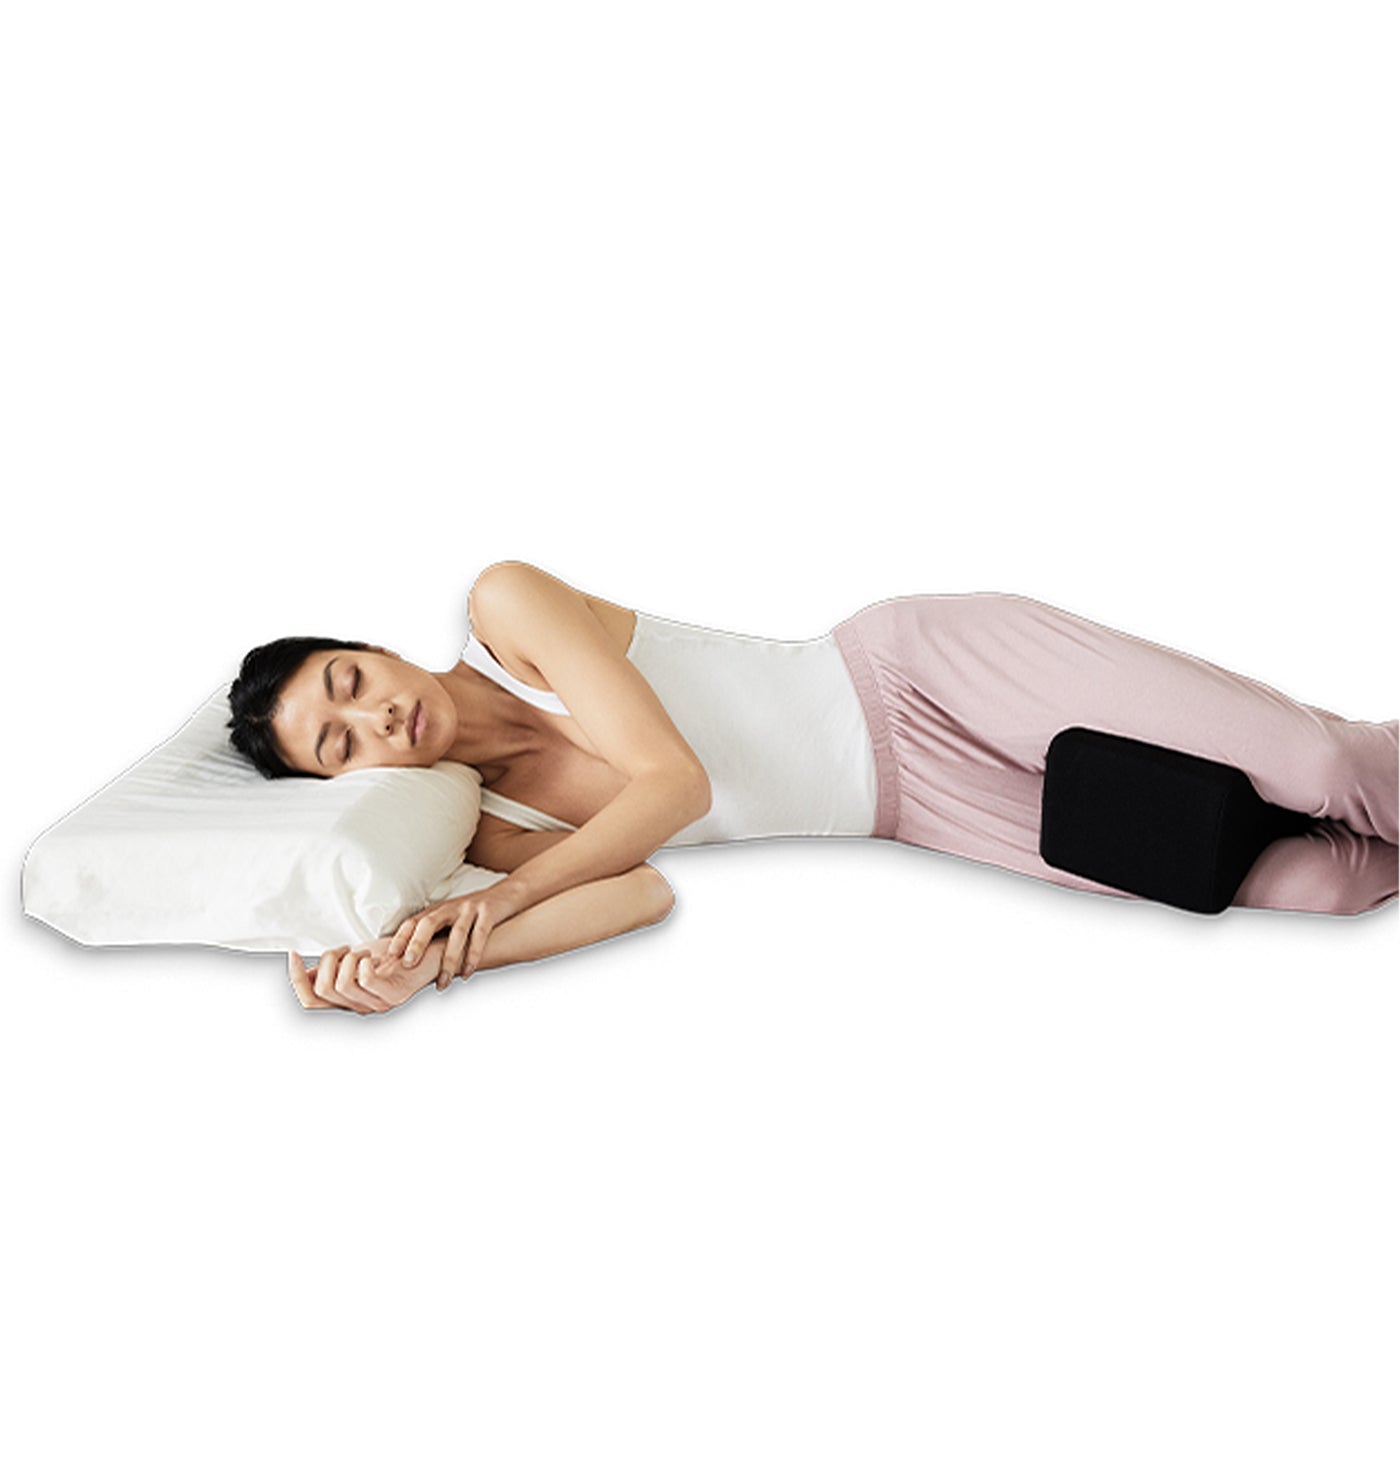 Flexi Pillow Knee Cushion - Mattress & Pillow SciencePillows